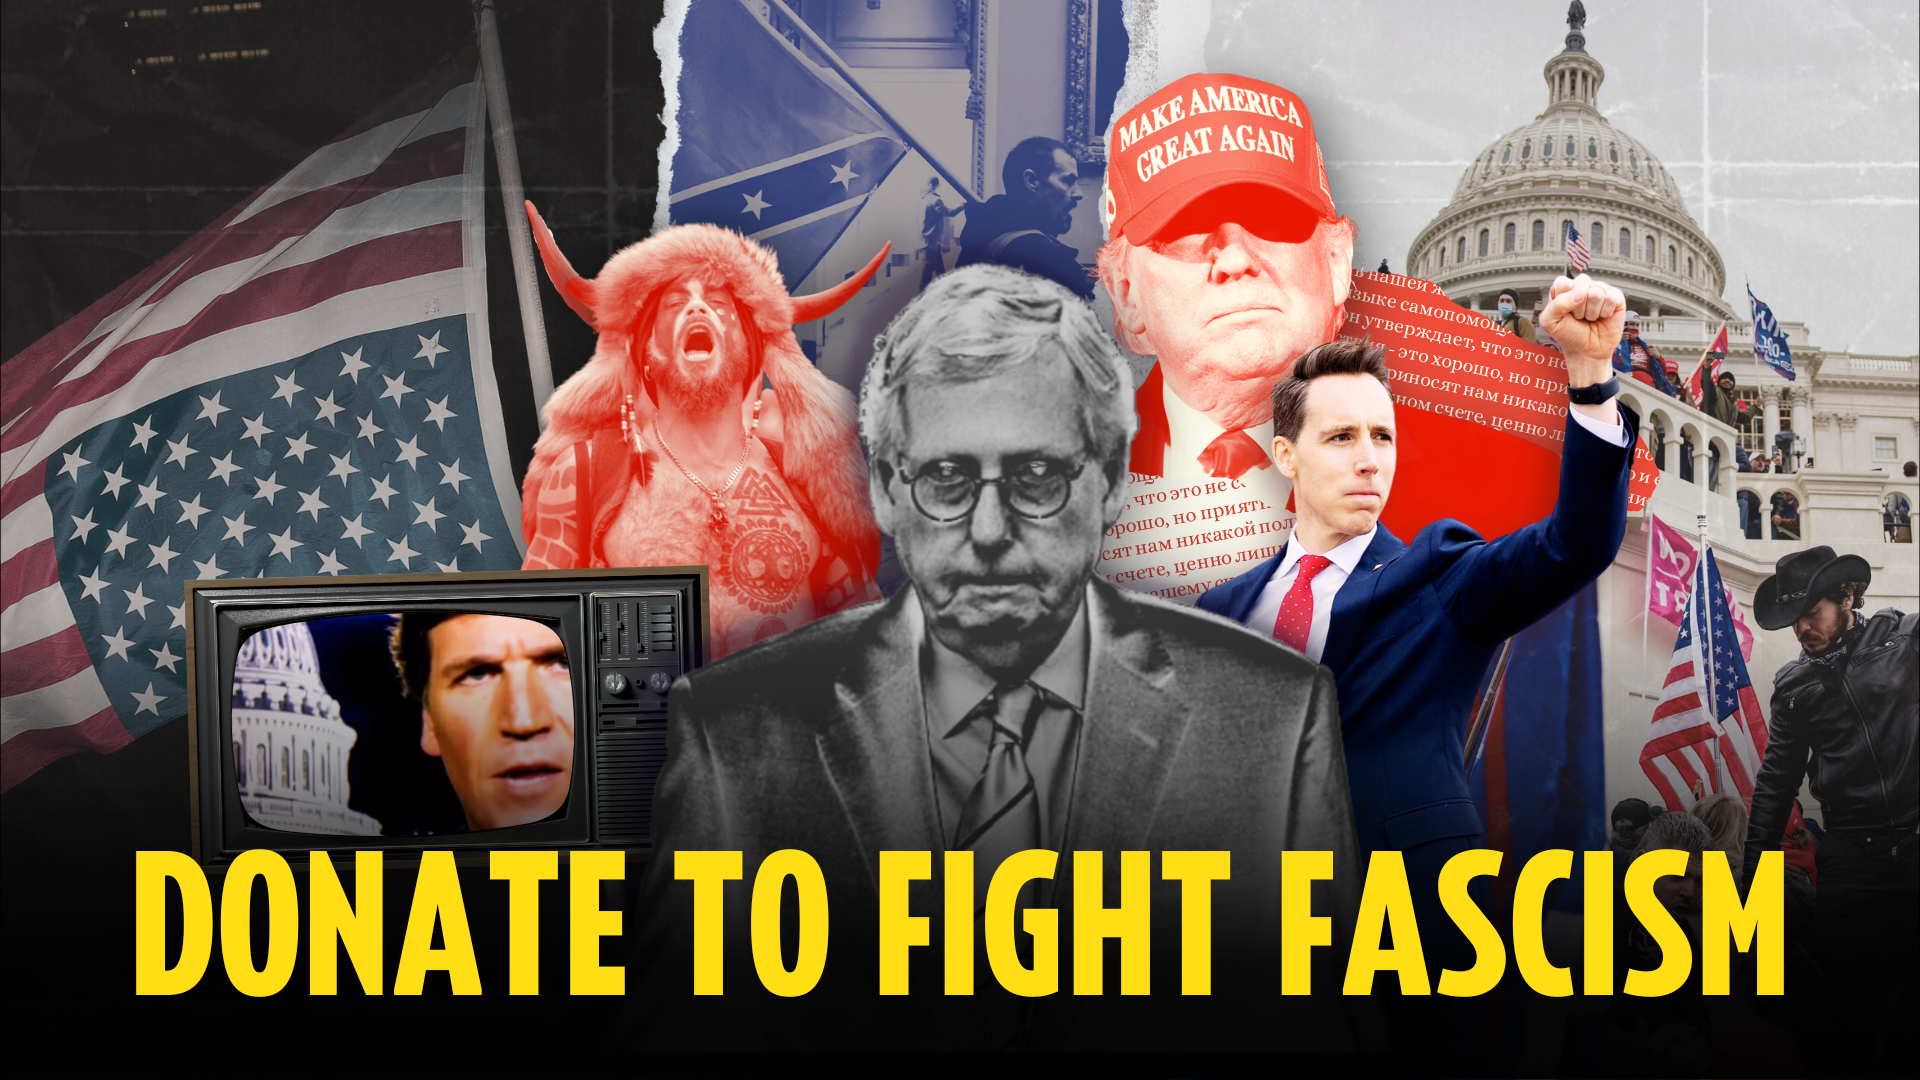 Doneer om het fascisme te bestrijden; Collage van fascistische symbolen en leiders